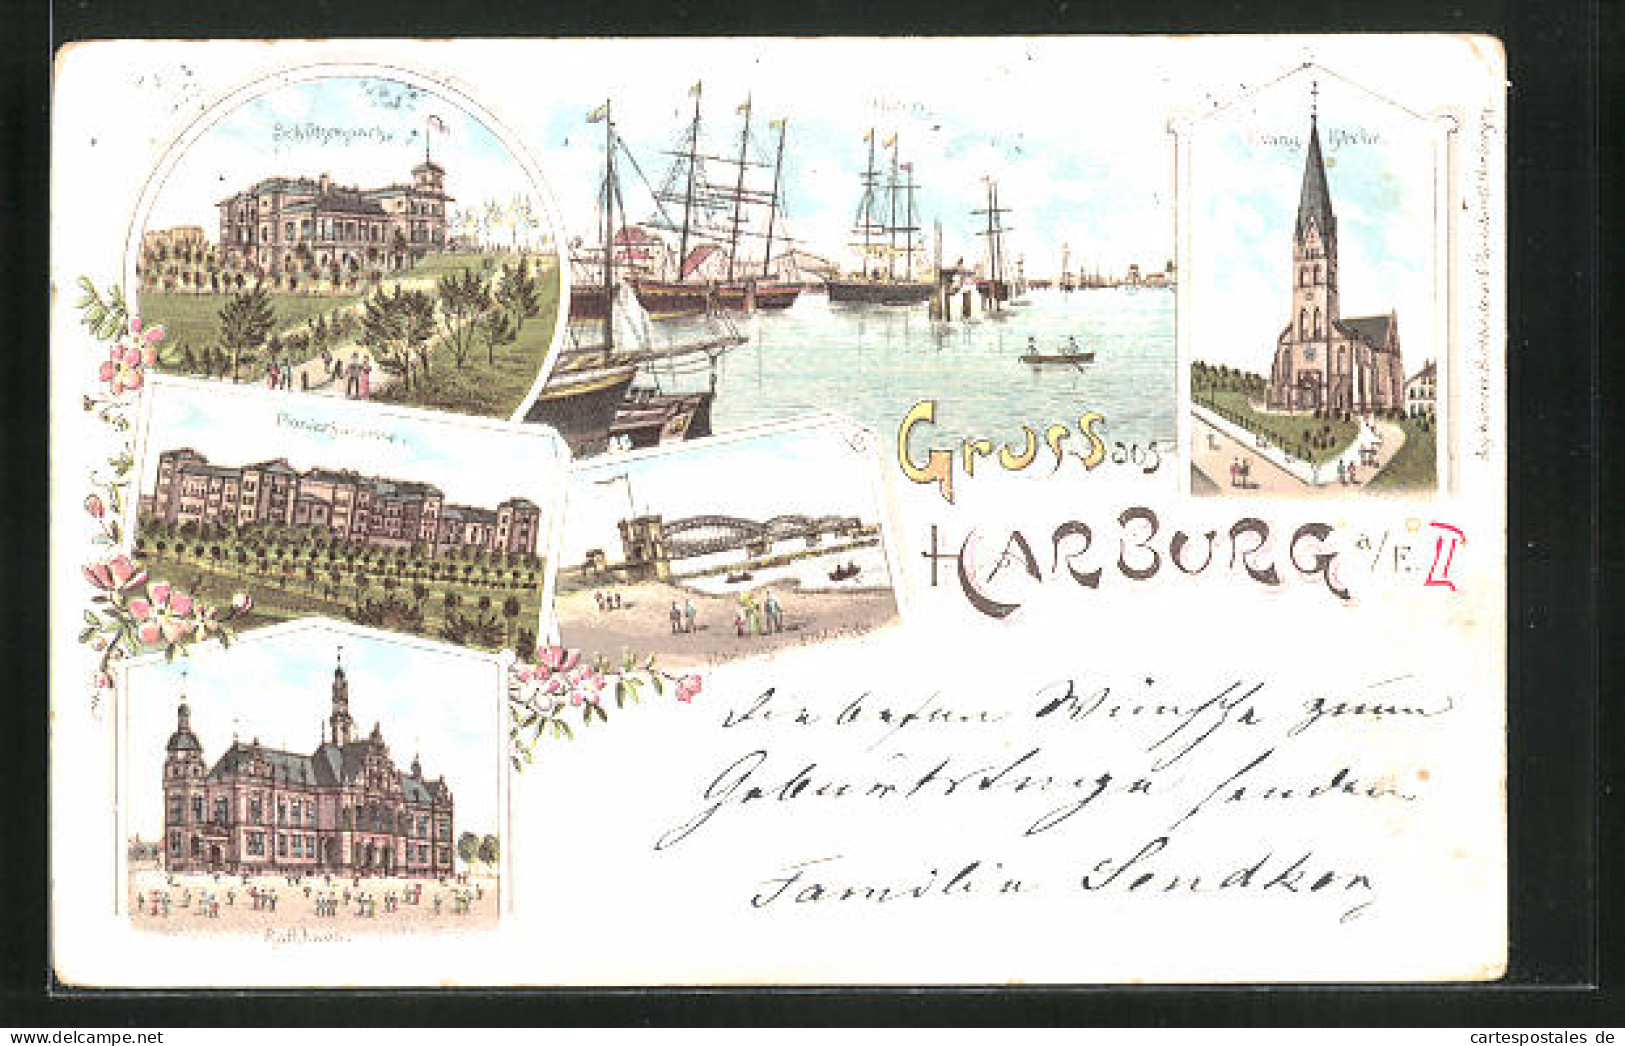 Lithographie Hamburg-Harburg, Hafe, Schützenpark, Pionierkaserne, Elbbrücke, Evang. Kirche  - Harburg